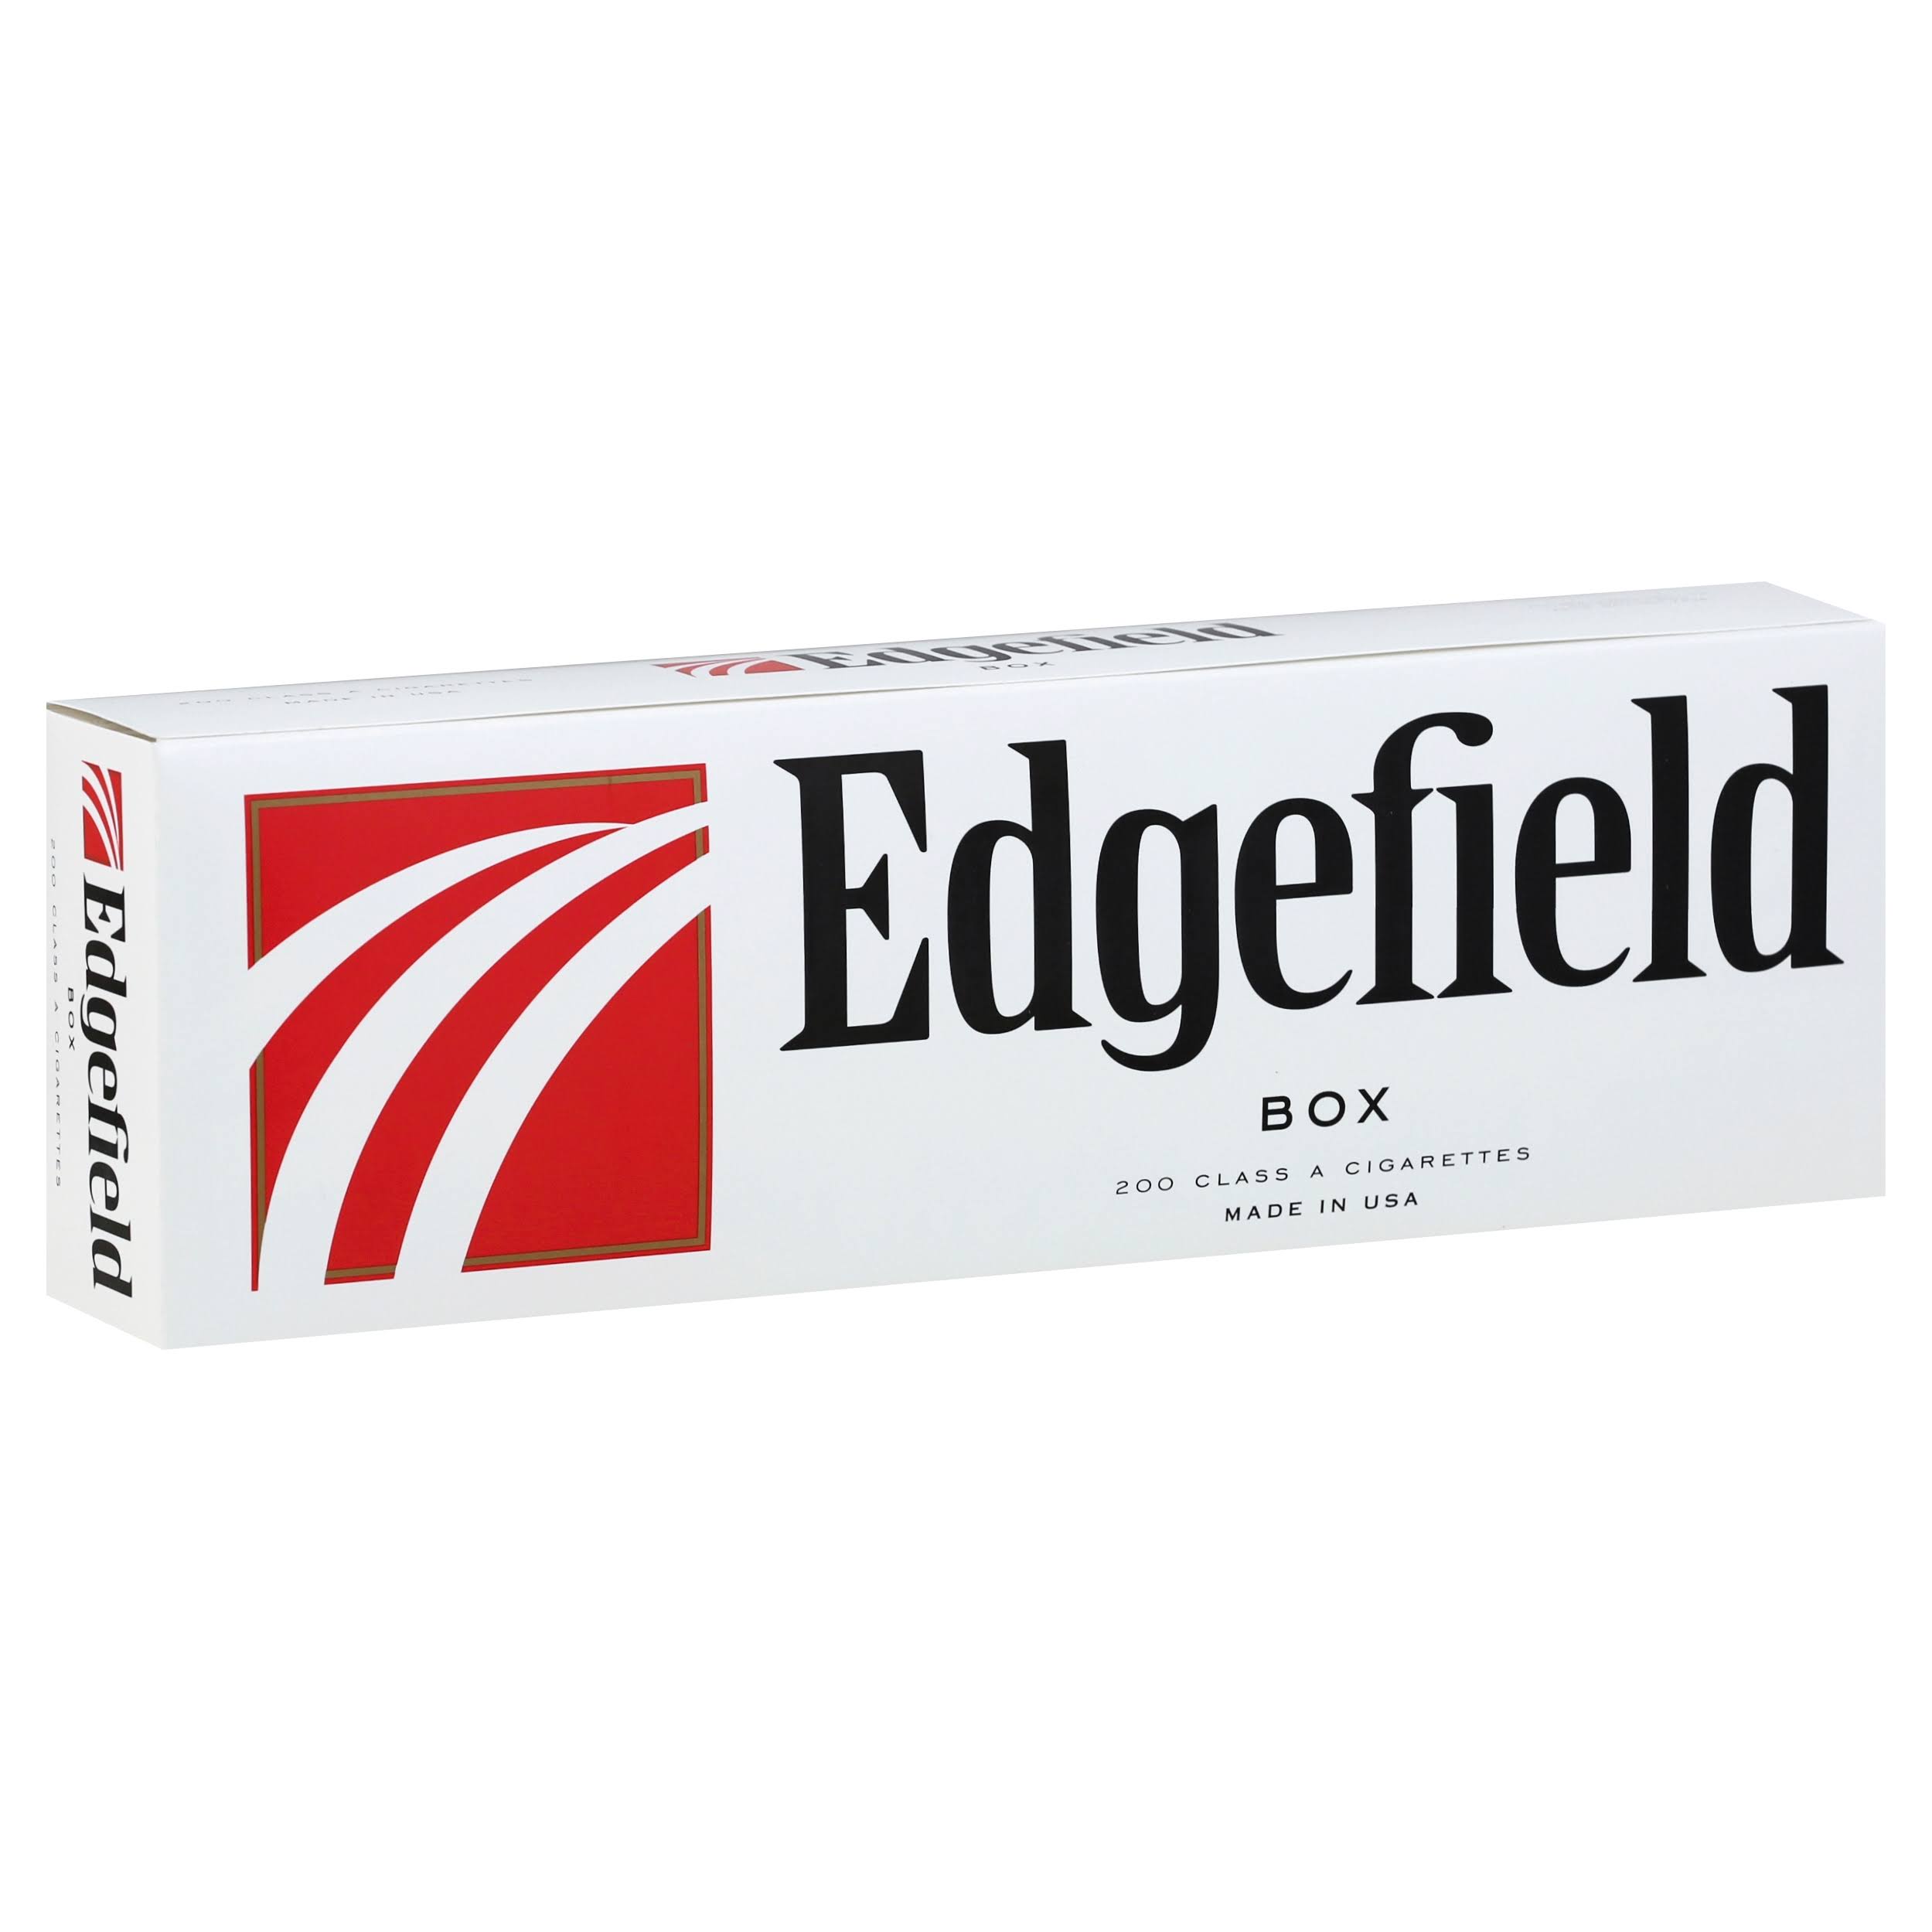 Edgefield Cigarettes, Box - 200 cigarettes